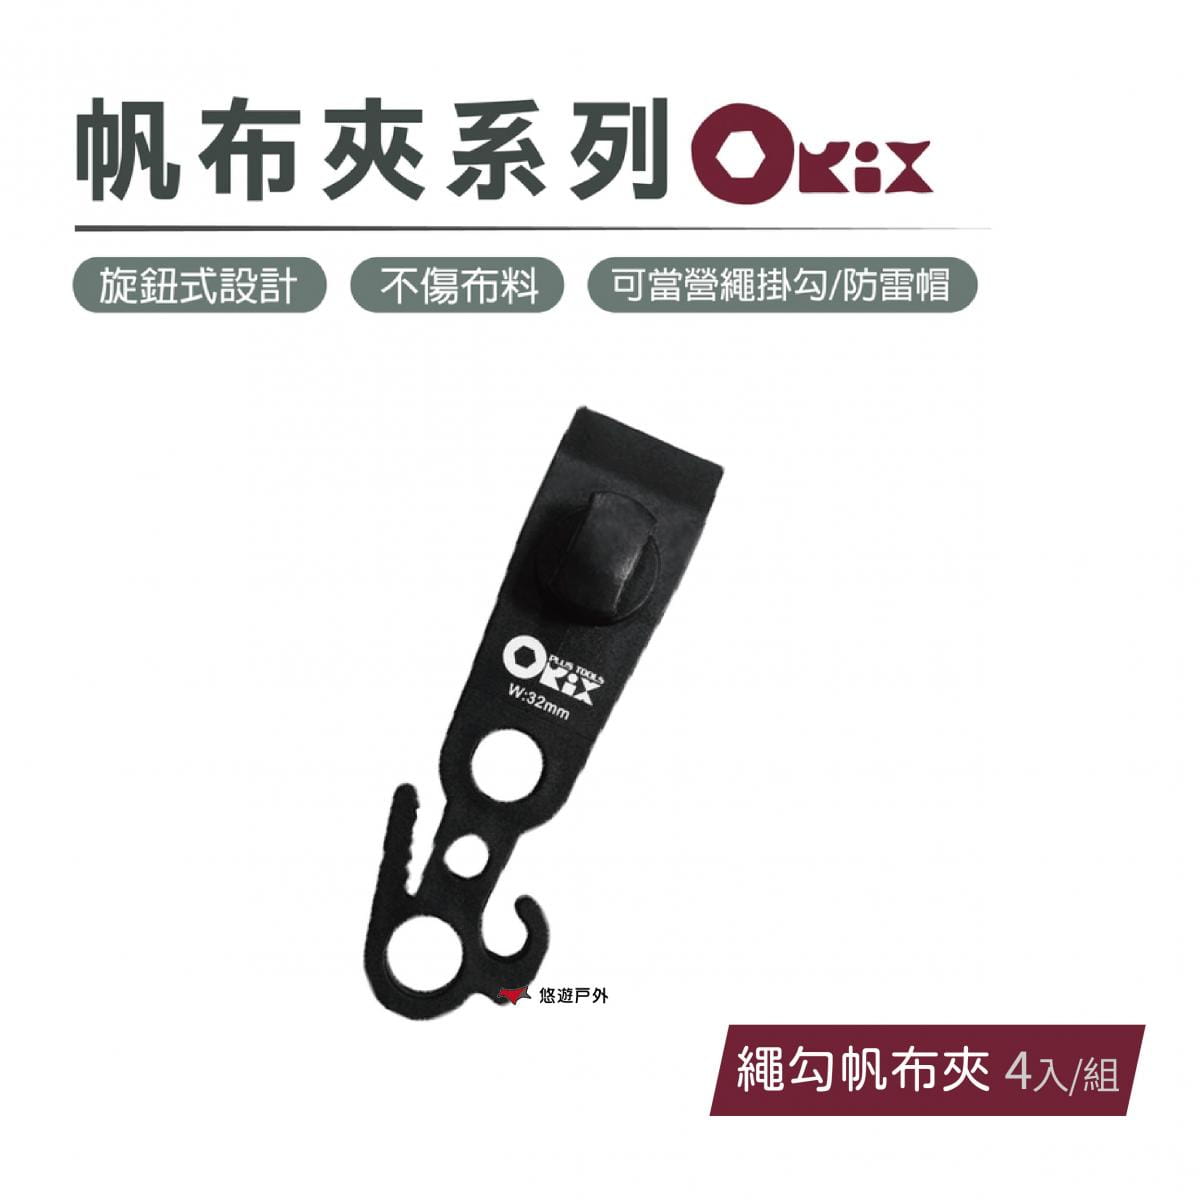 【ORIX】繩勾帆布夾(4入/組) 悠遊戶外 0